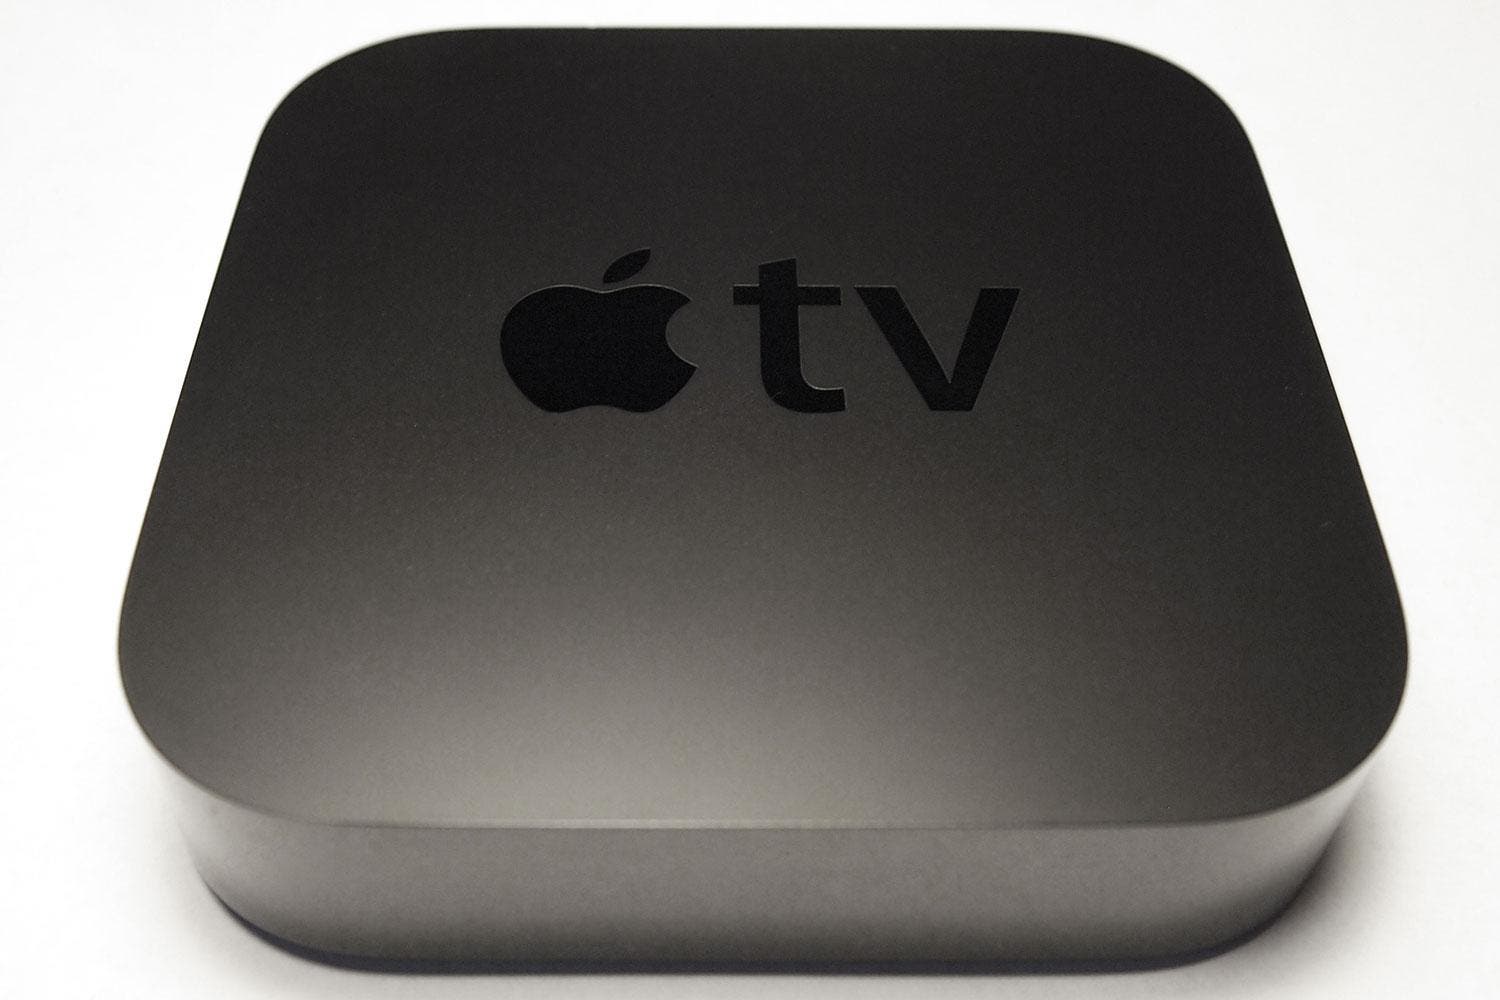 El Apple TV ahora cuesta solo $ 69.00, pero ¿vale la pena?